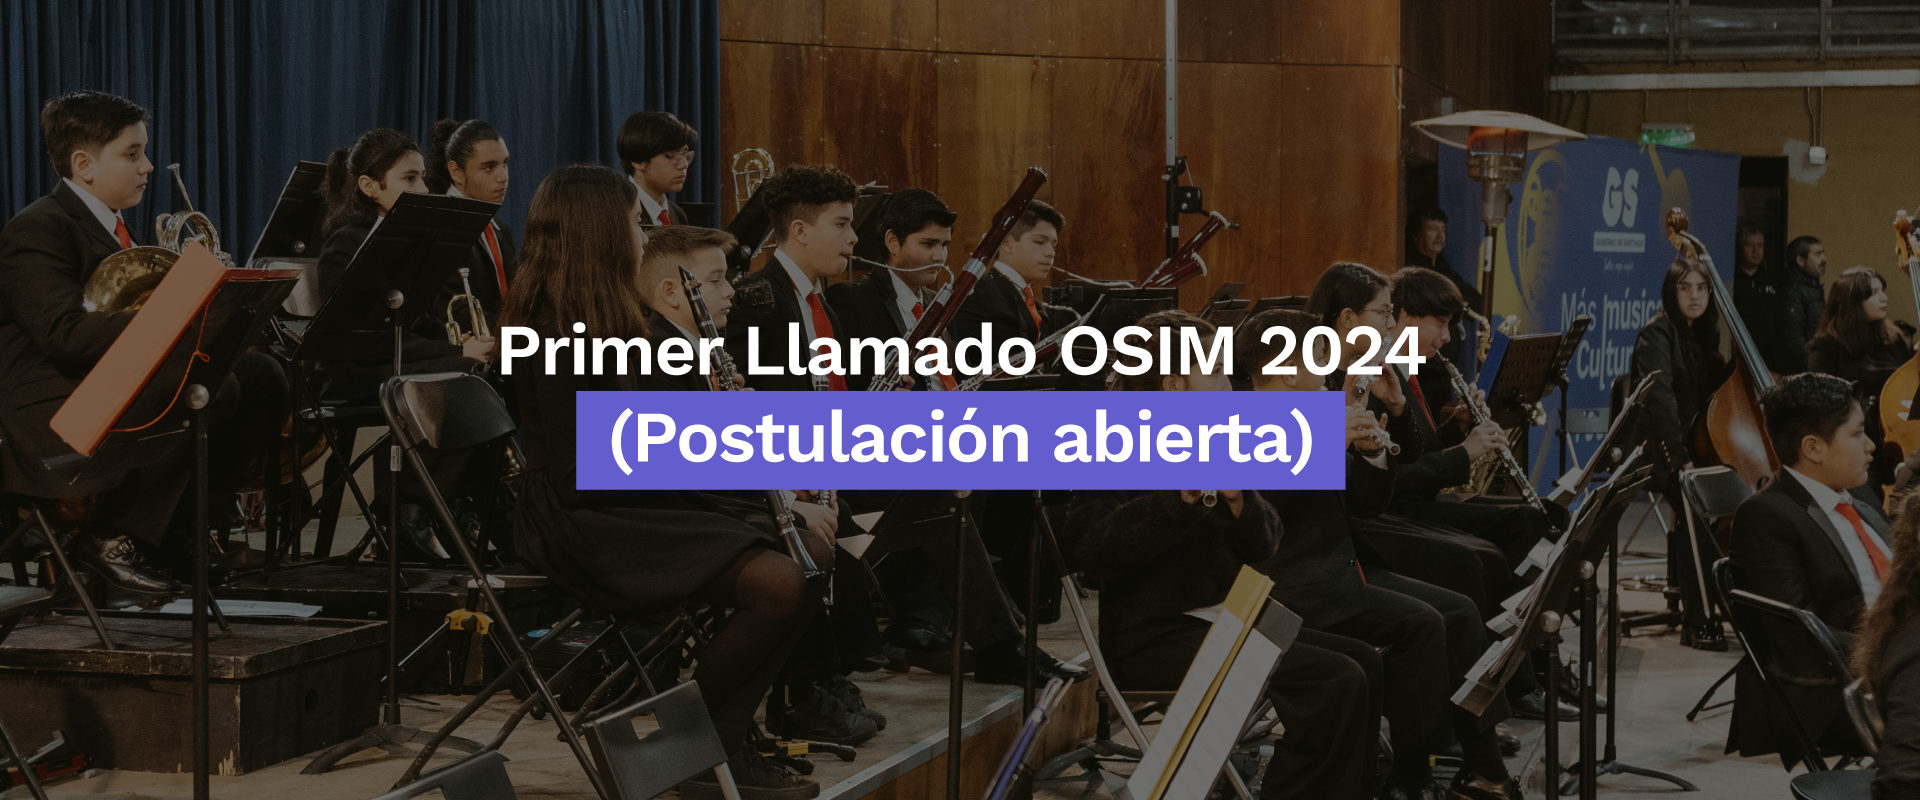 PRIMER LLAMADO OSIM 2024 (Postulaciones abiertas)